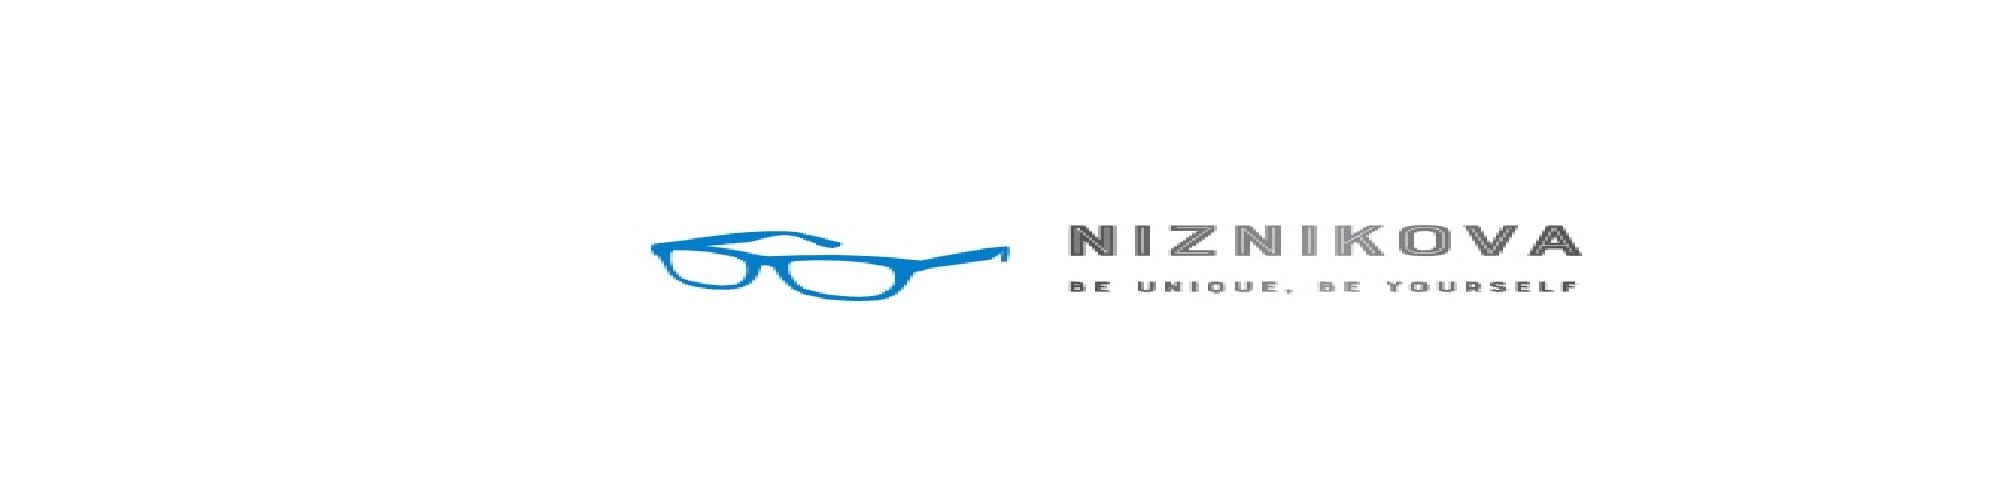 Niznikova™ Sunglasses cover